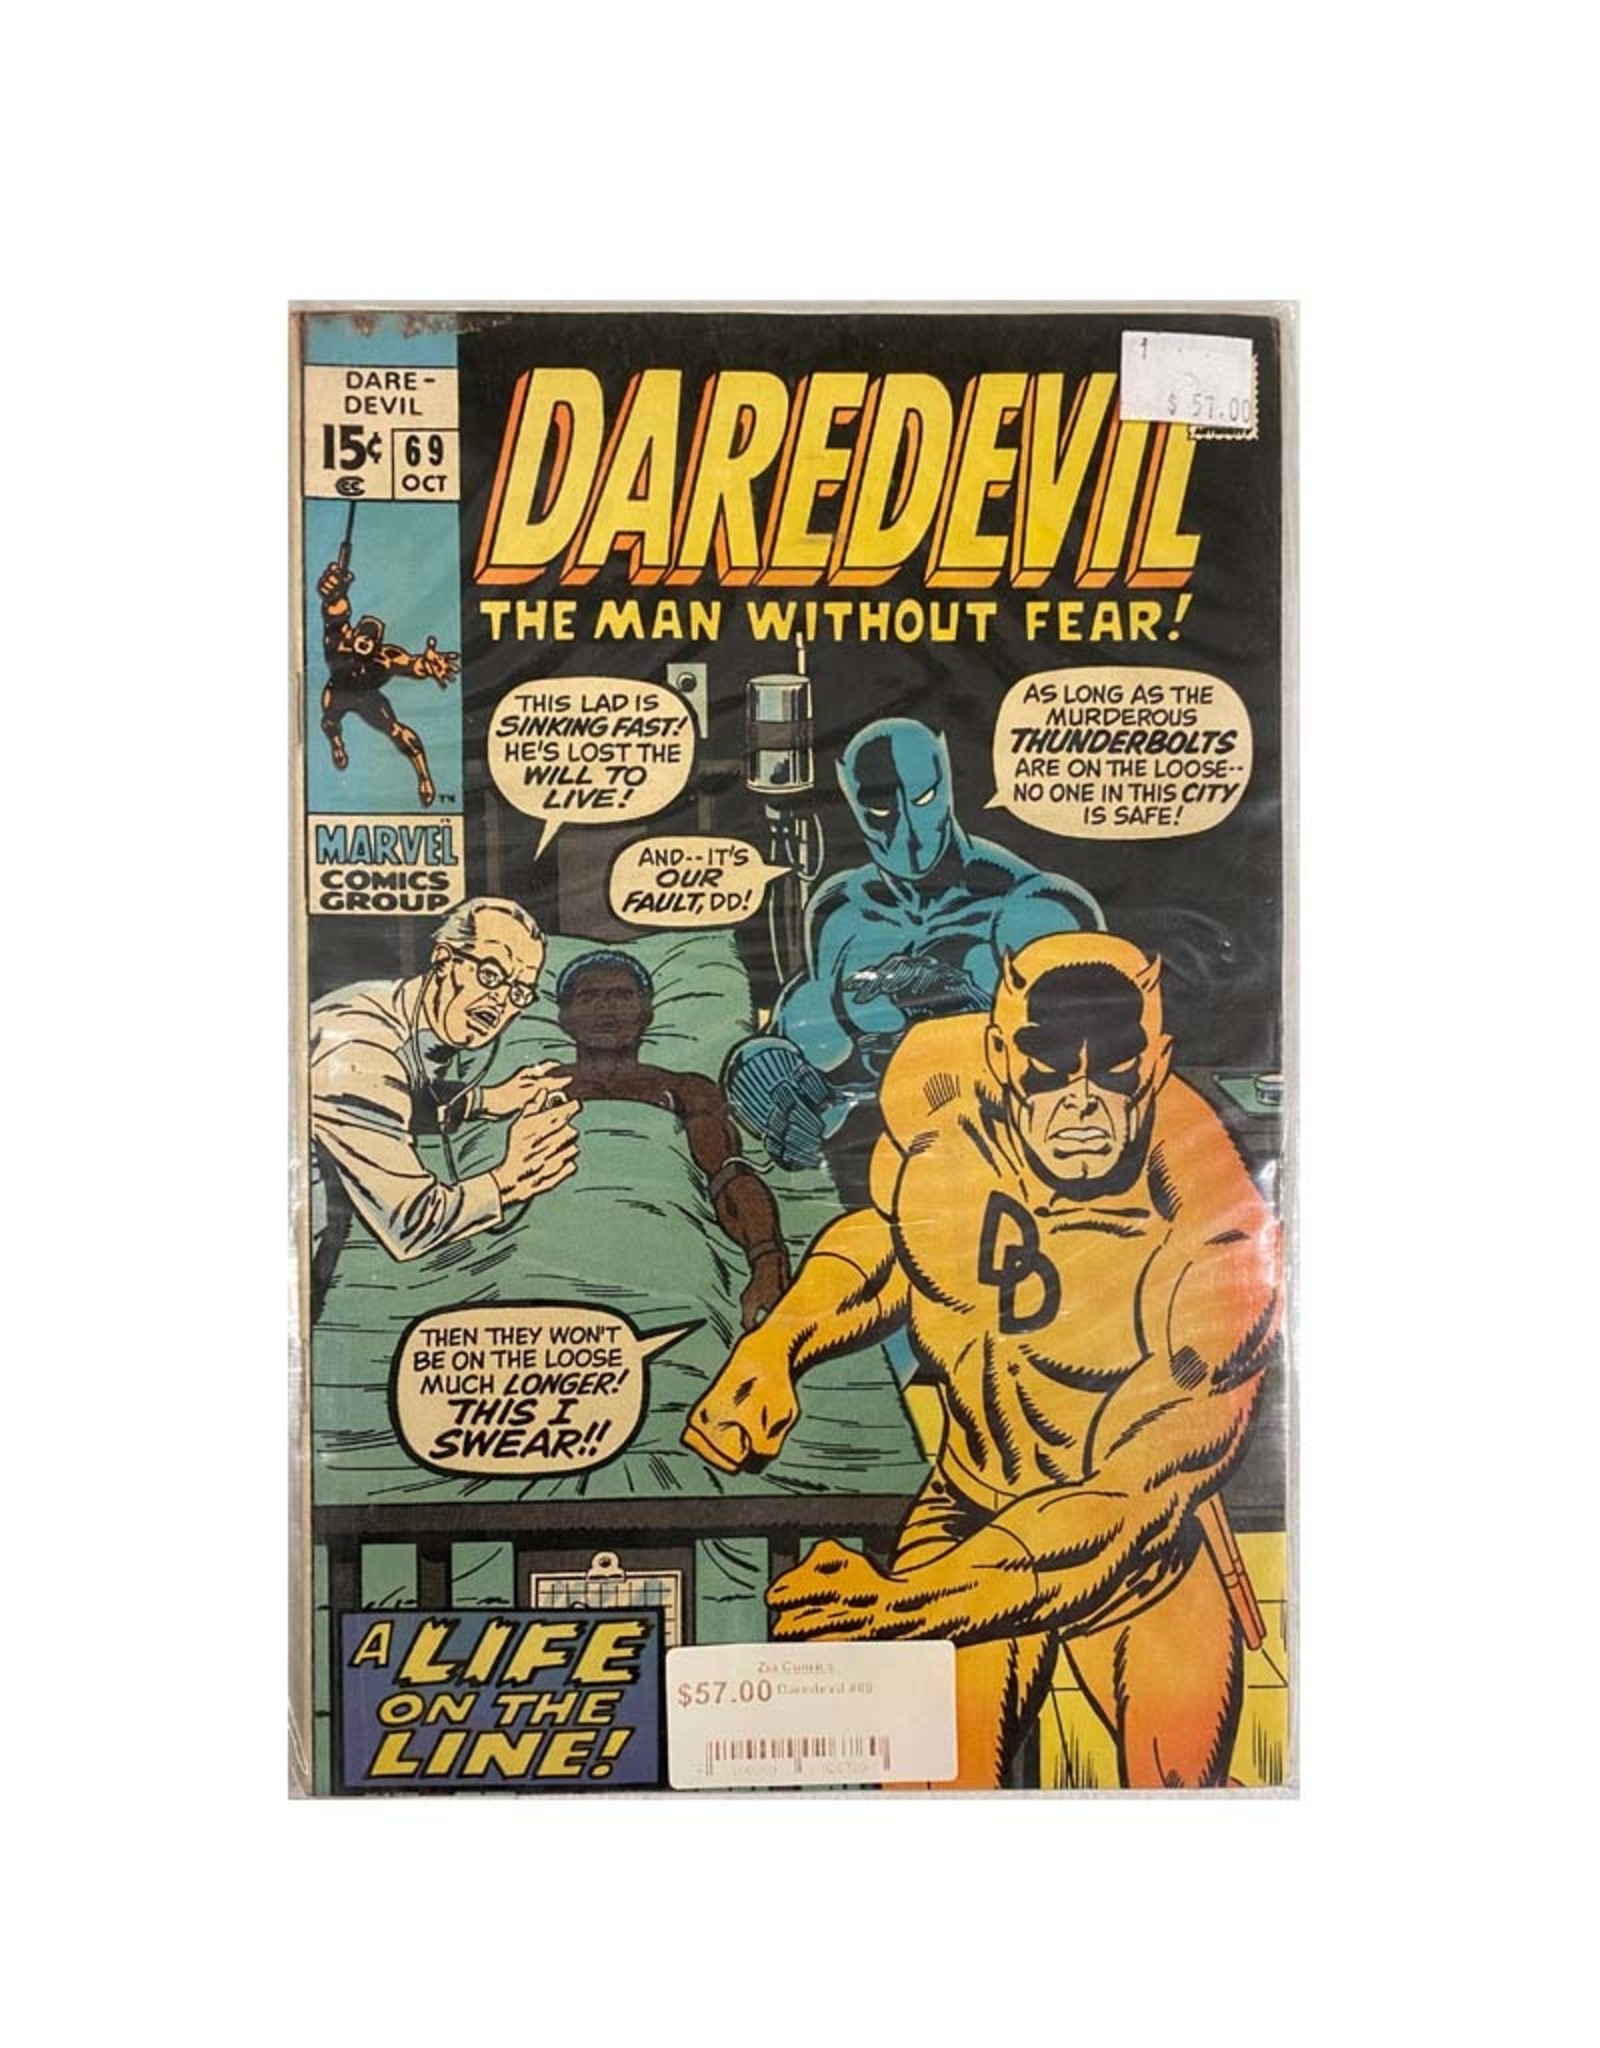 Marvel Comics Daredevil #69